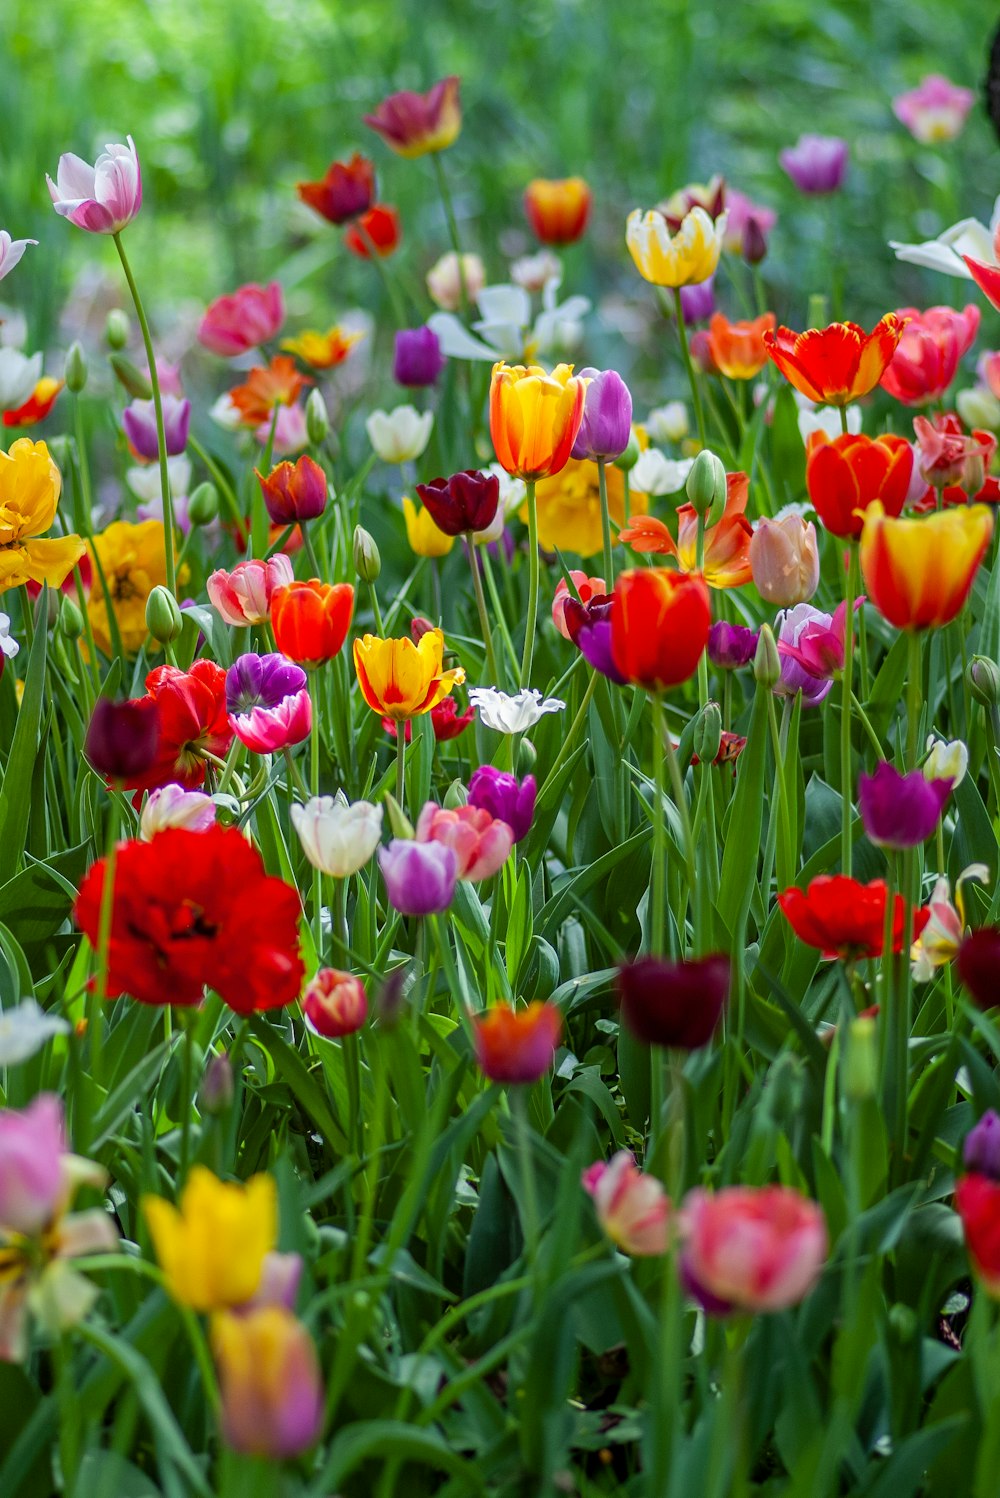 tuliip di colori assortiti